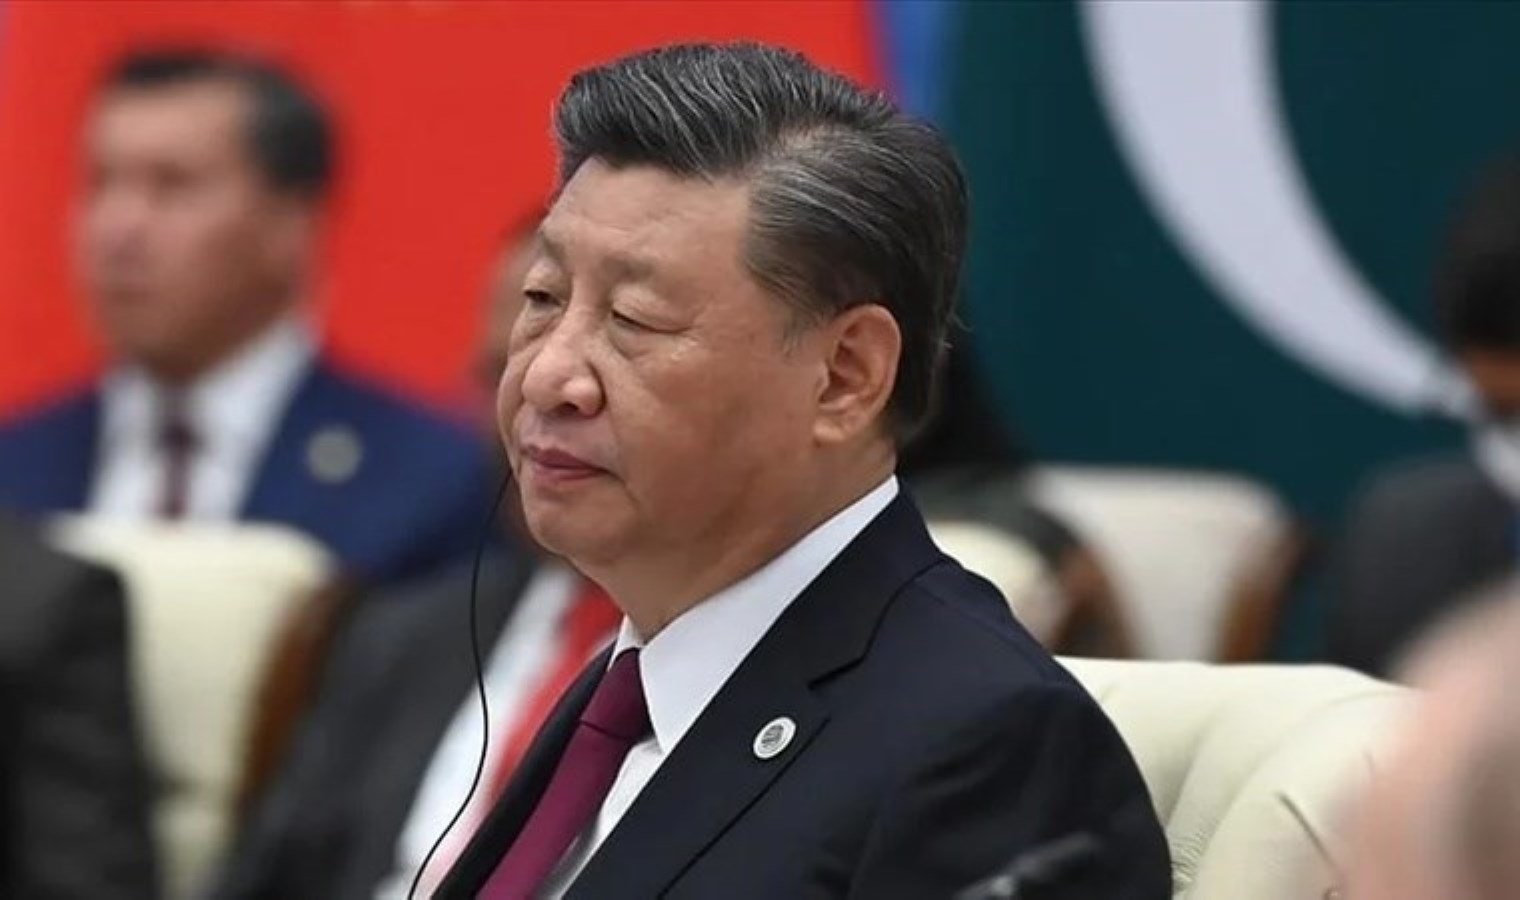 Çin’den ABD’ye çağrı: Rakip değil ortak olmalıyız